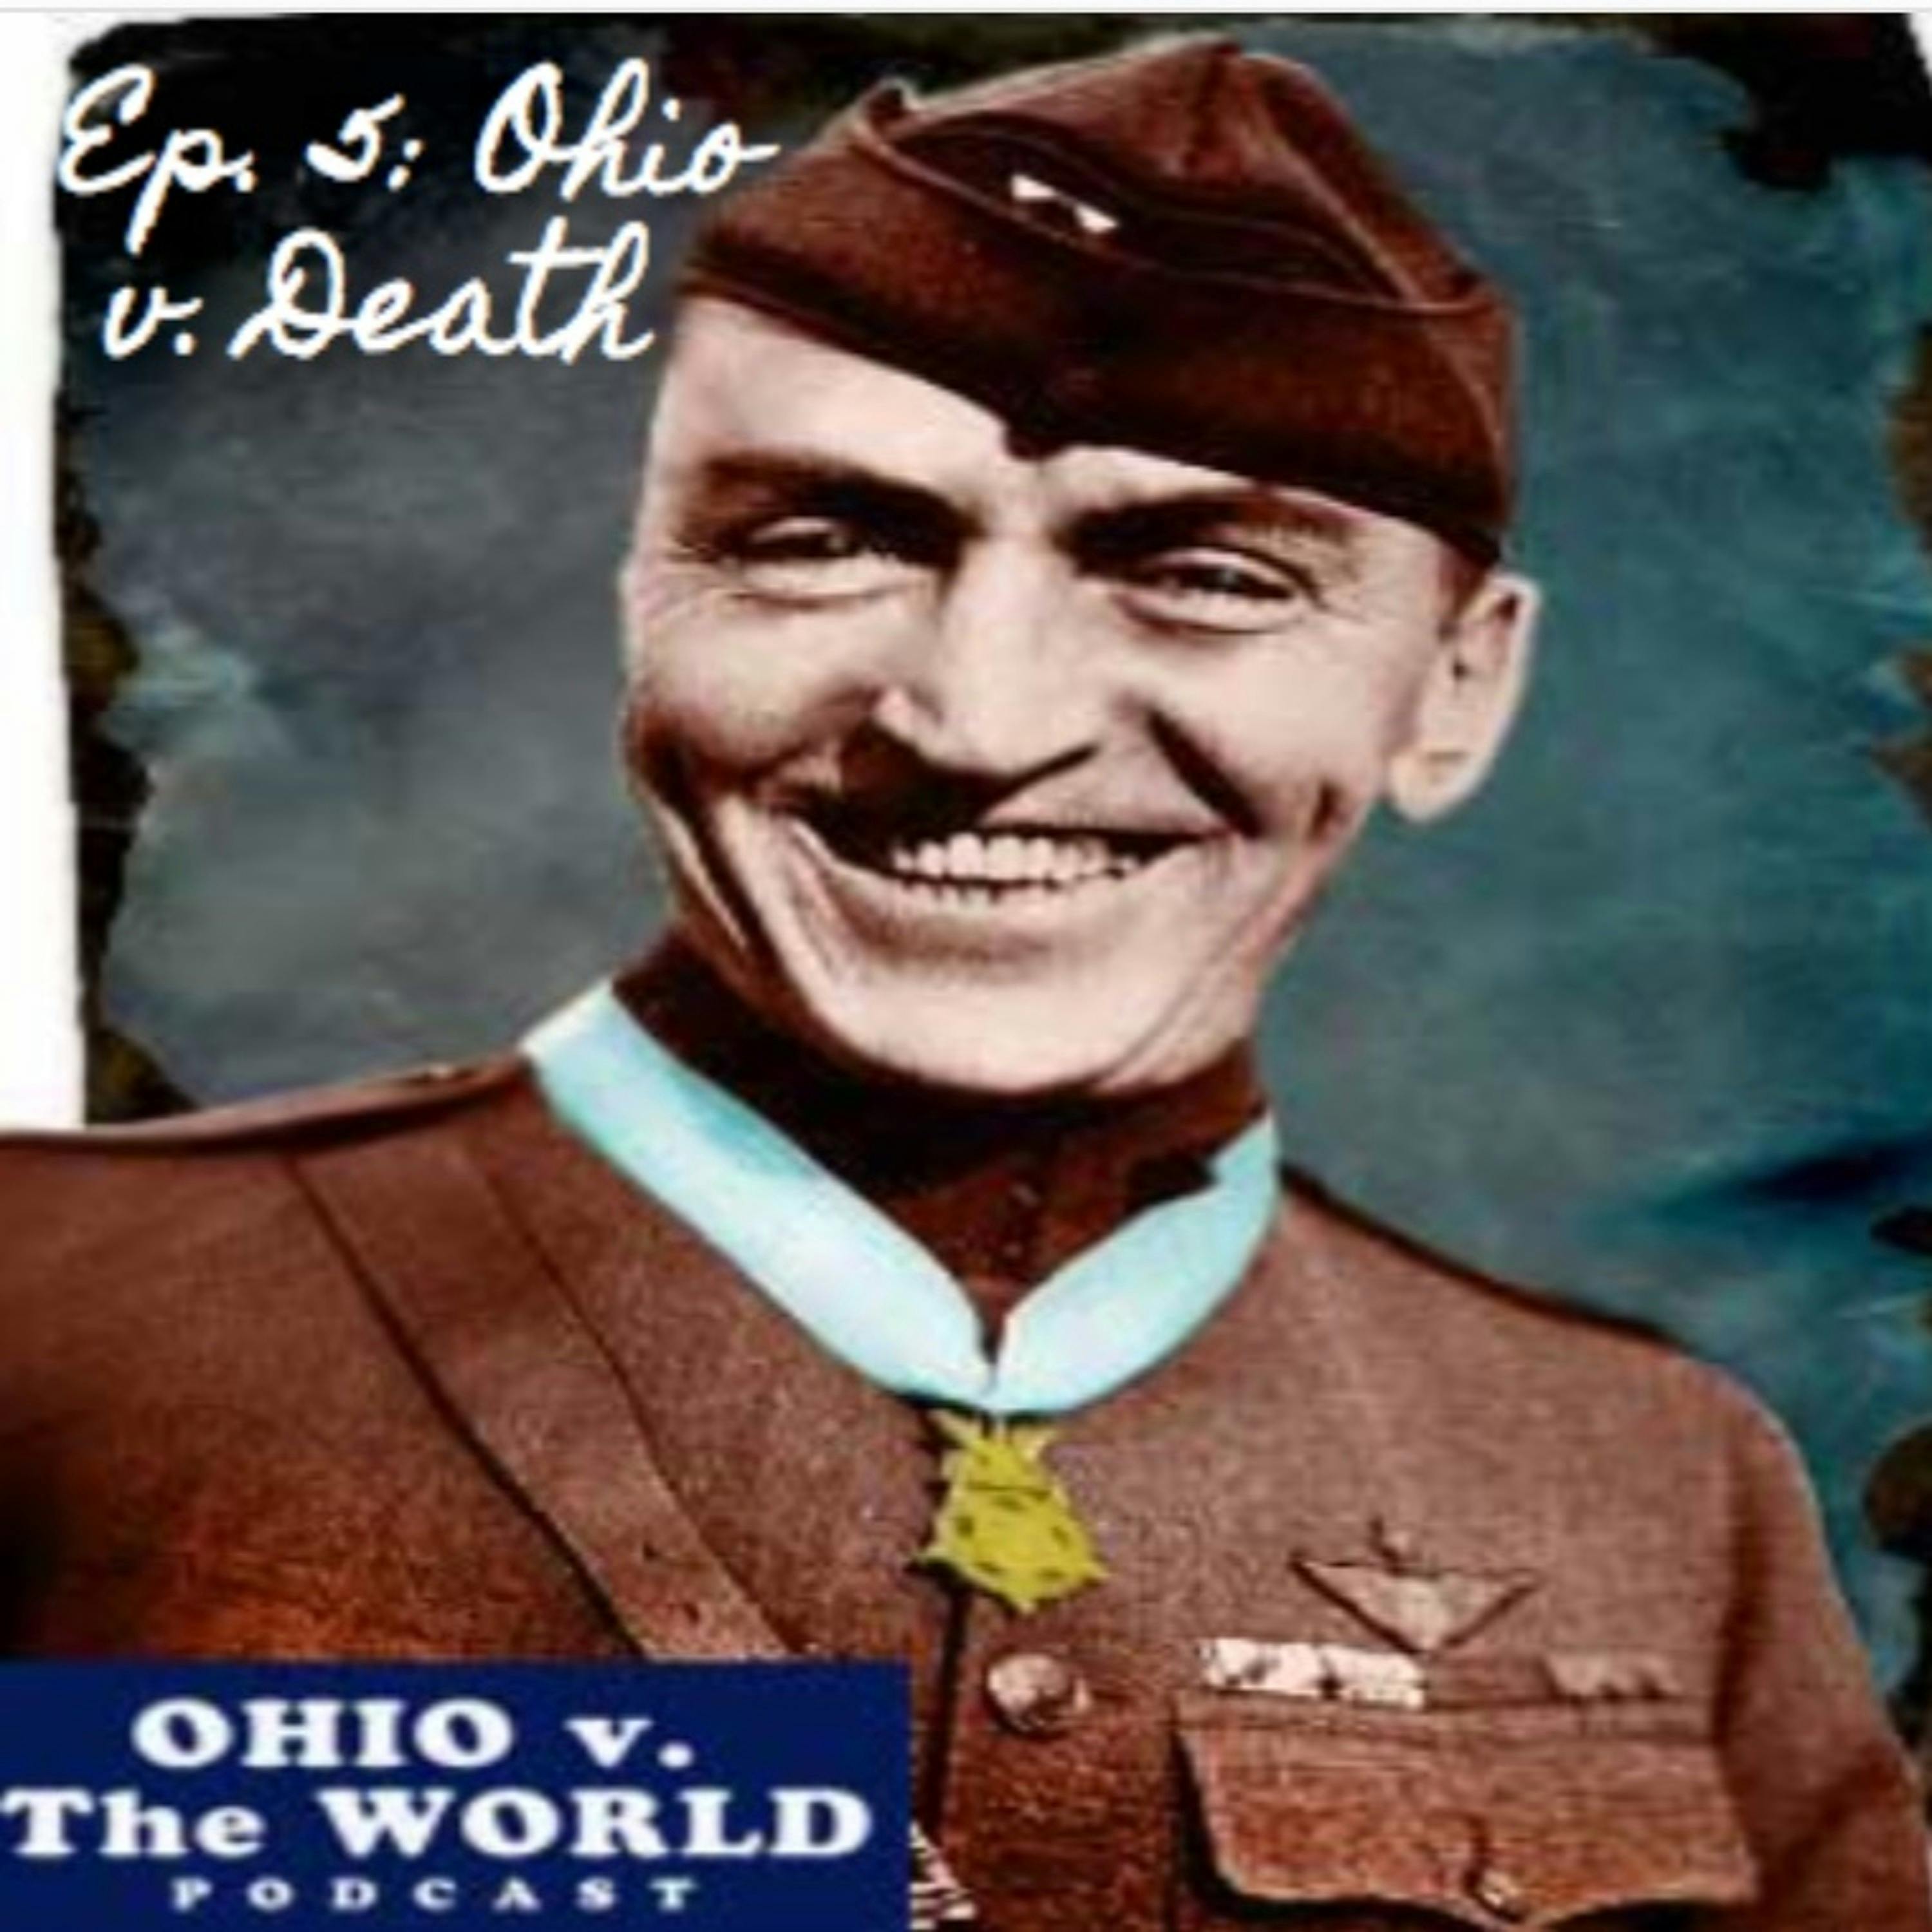 Episode 5: Ohio v. Death (Eddie Rickenbacker)